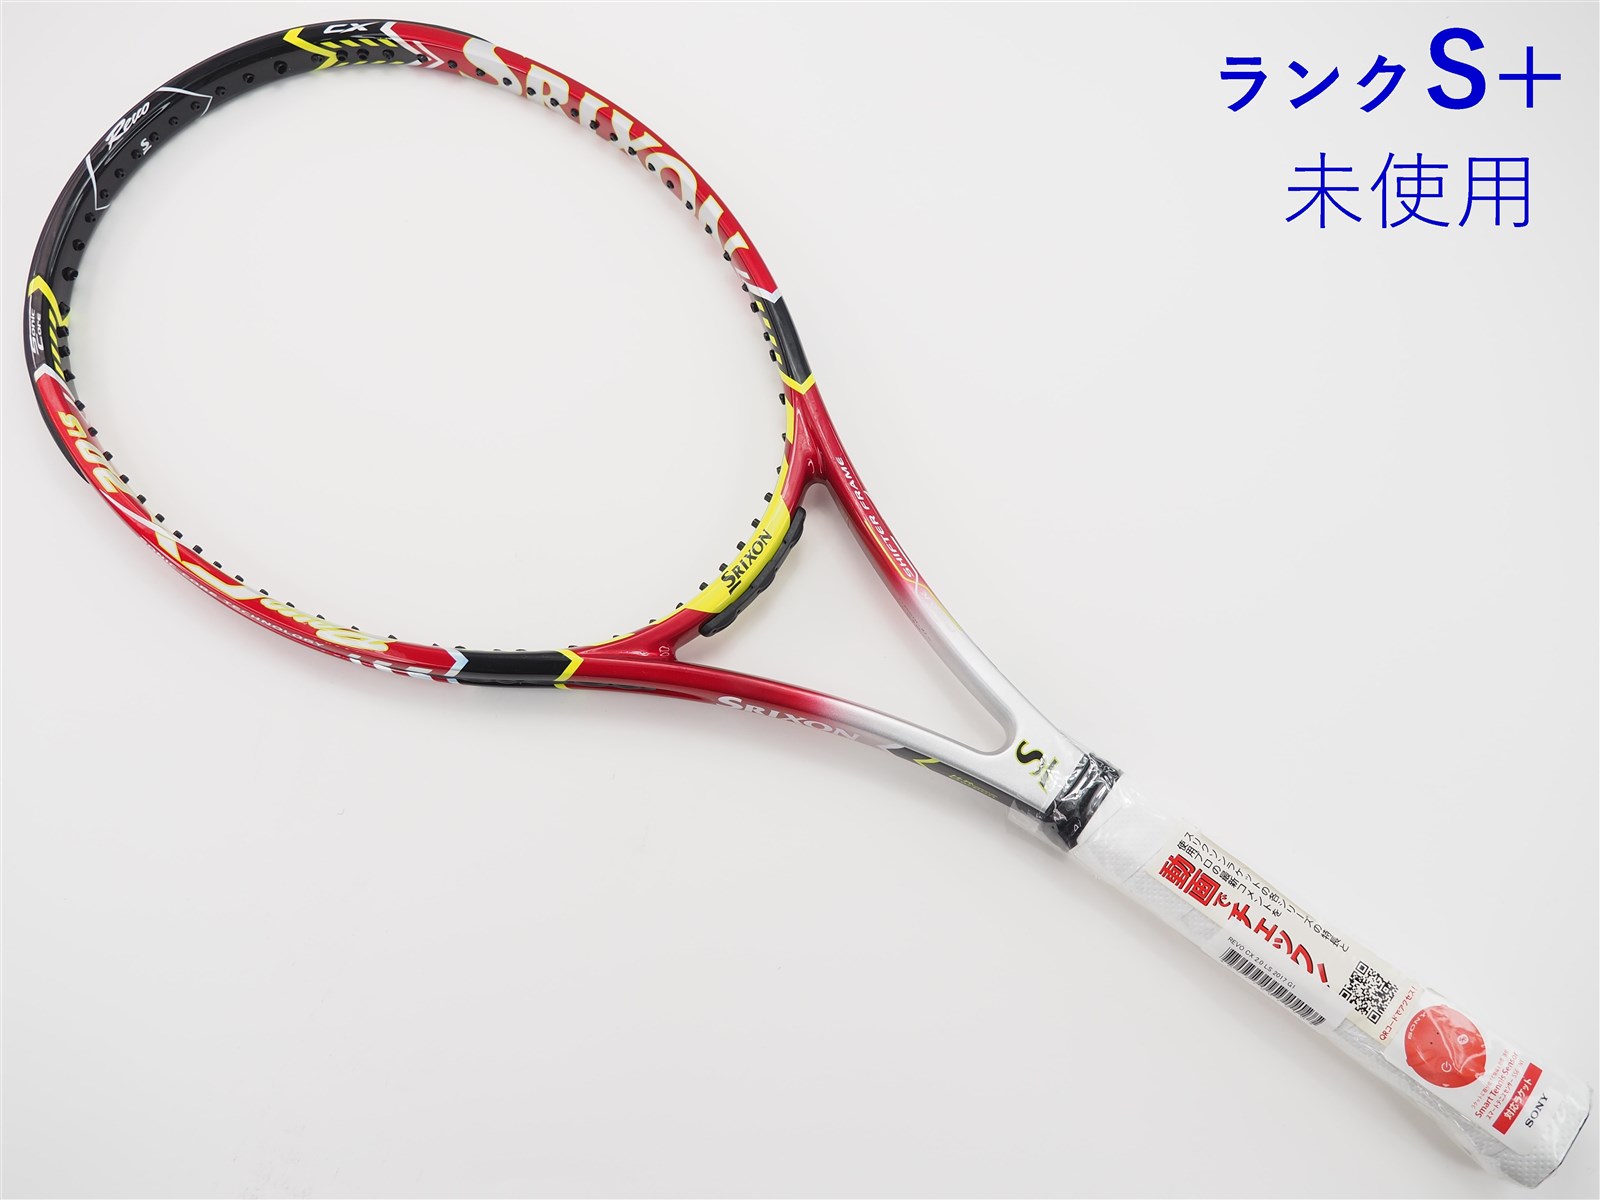 限定価格セール スリクソン テニスラケット REVO 2.0 ２本セット